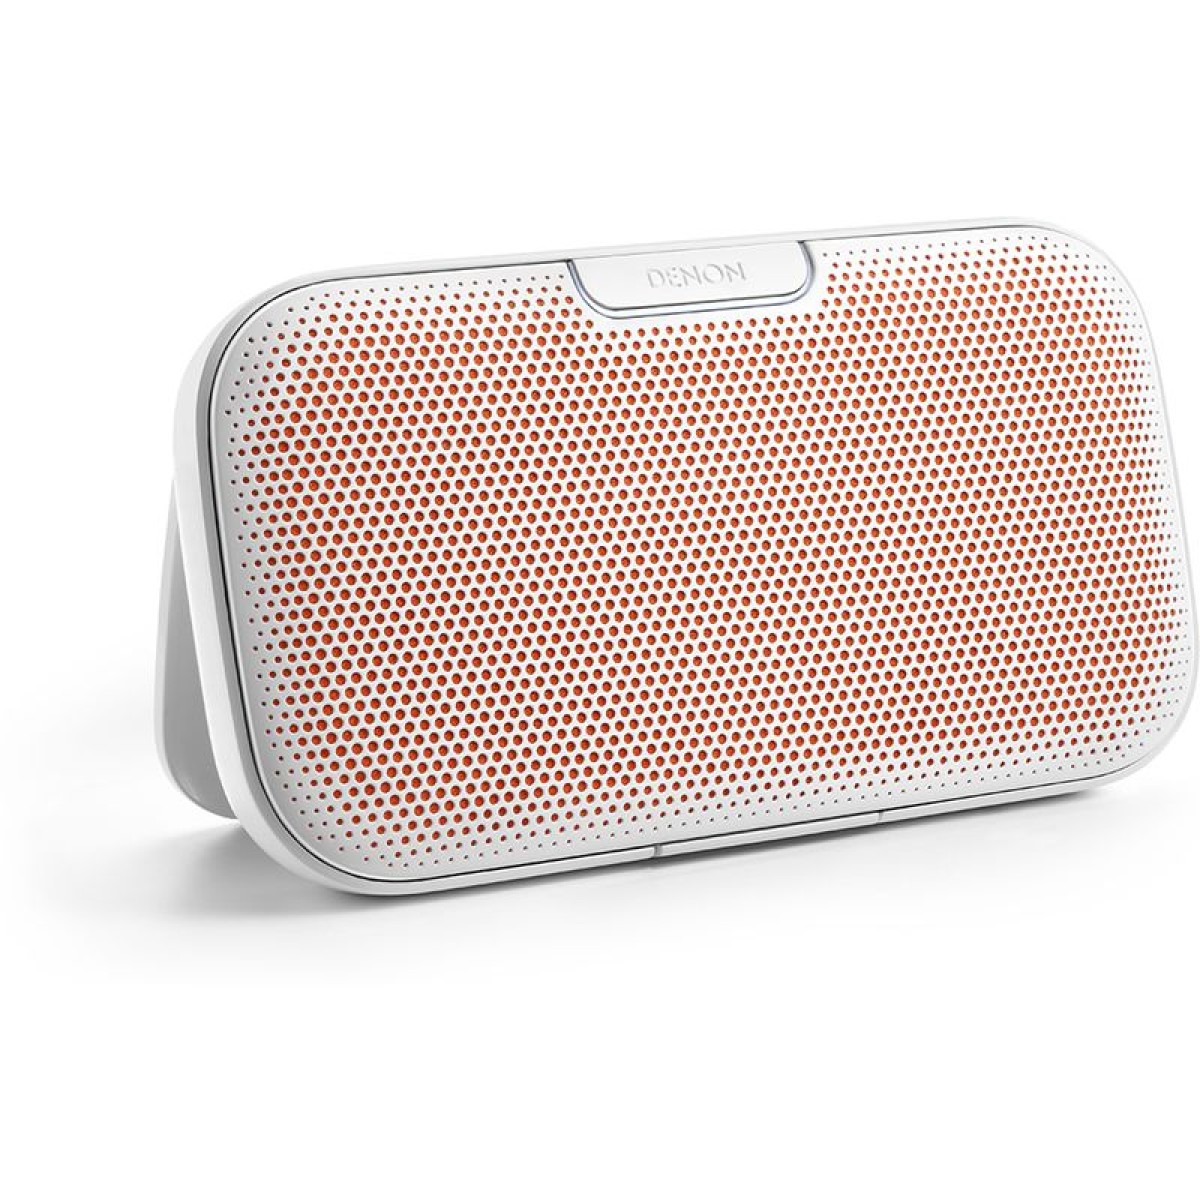 Hier sehen Sie den Artikel Envaya DSB-200 Bluetooth Speaker white aus der Kategorie Bluetooth Speaker. Dieser Artikel ist erhältlich bei cebrands.ch